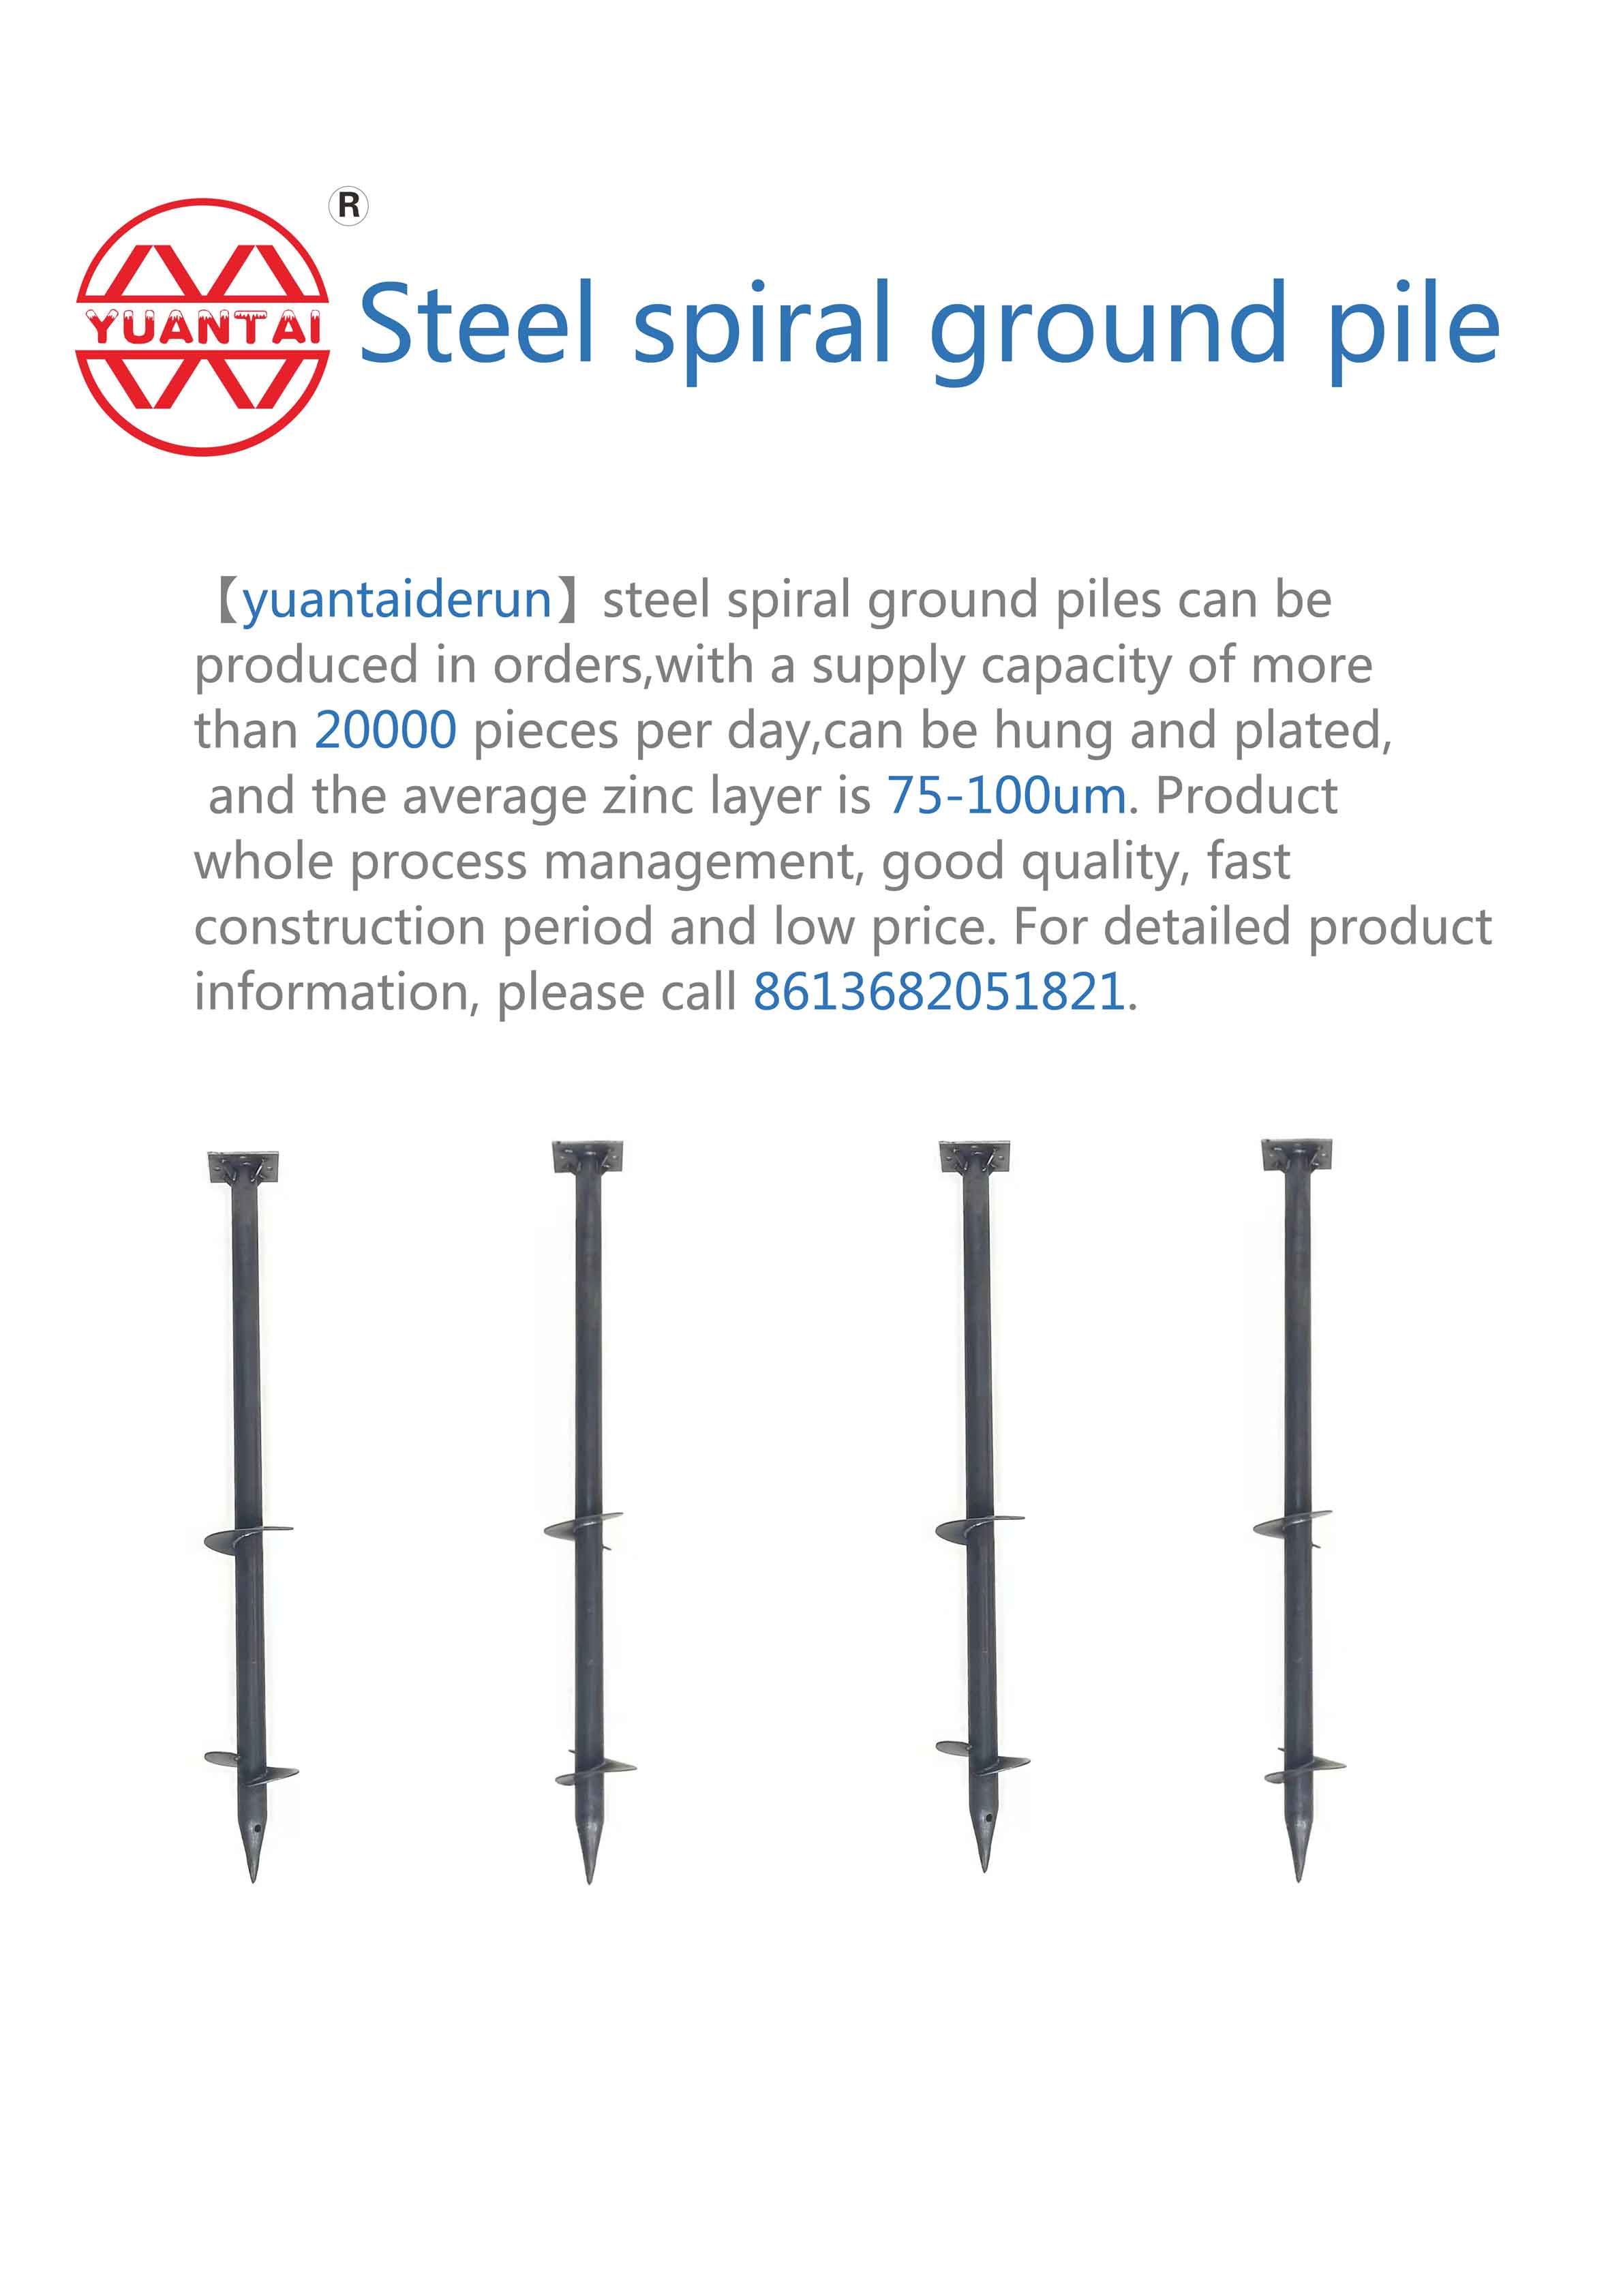 [yuantaiderun] steel spiral ground piles ay maaaring gawin sa pamamagitan ng mga order